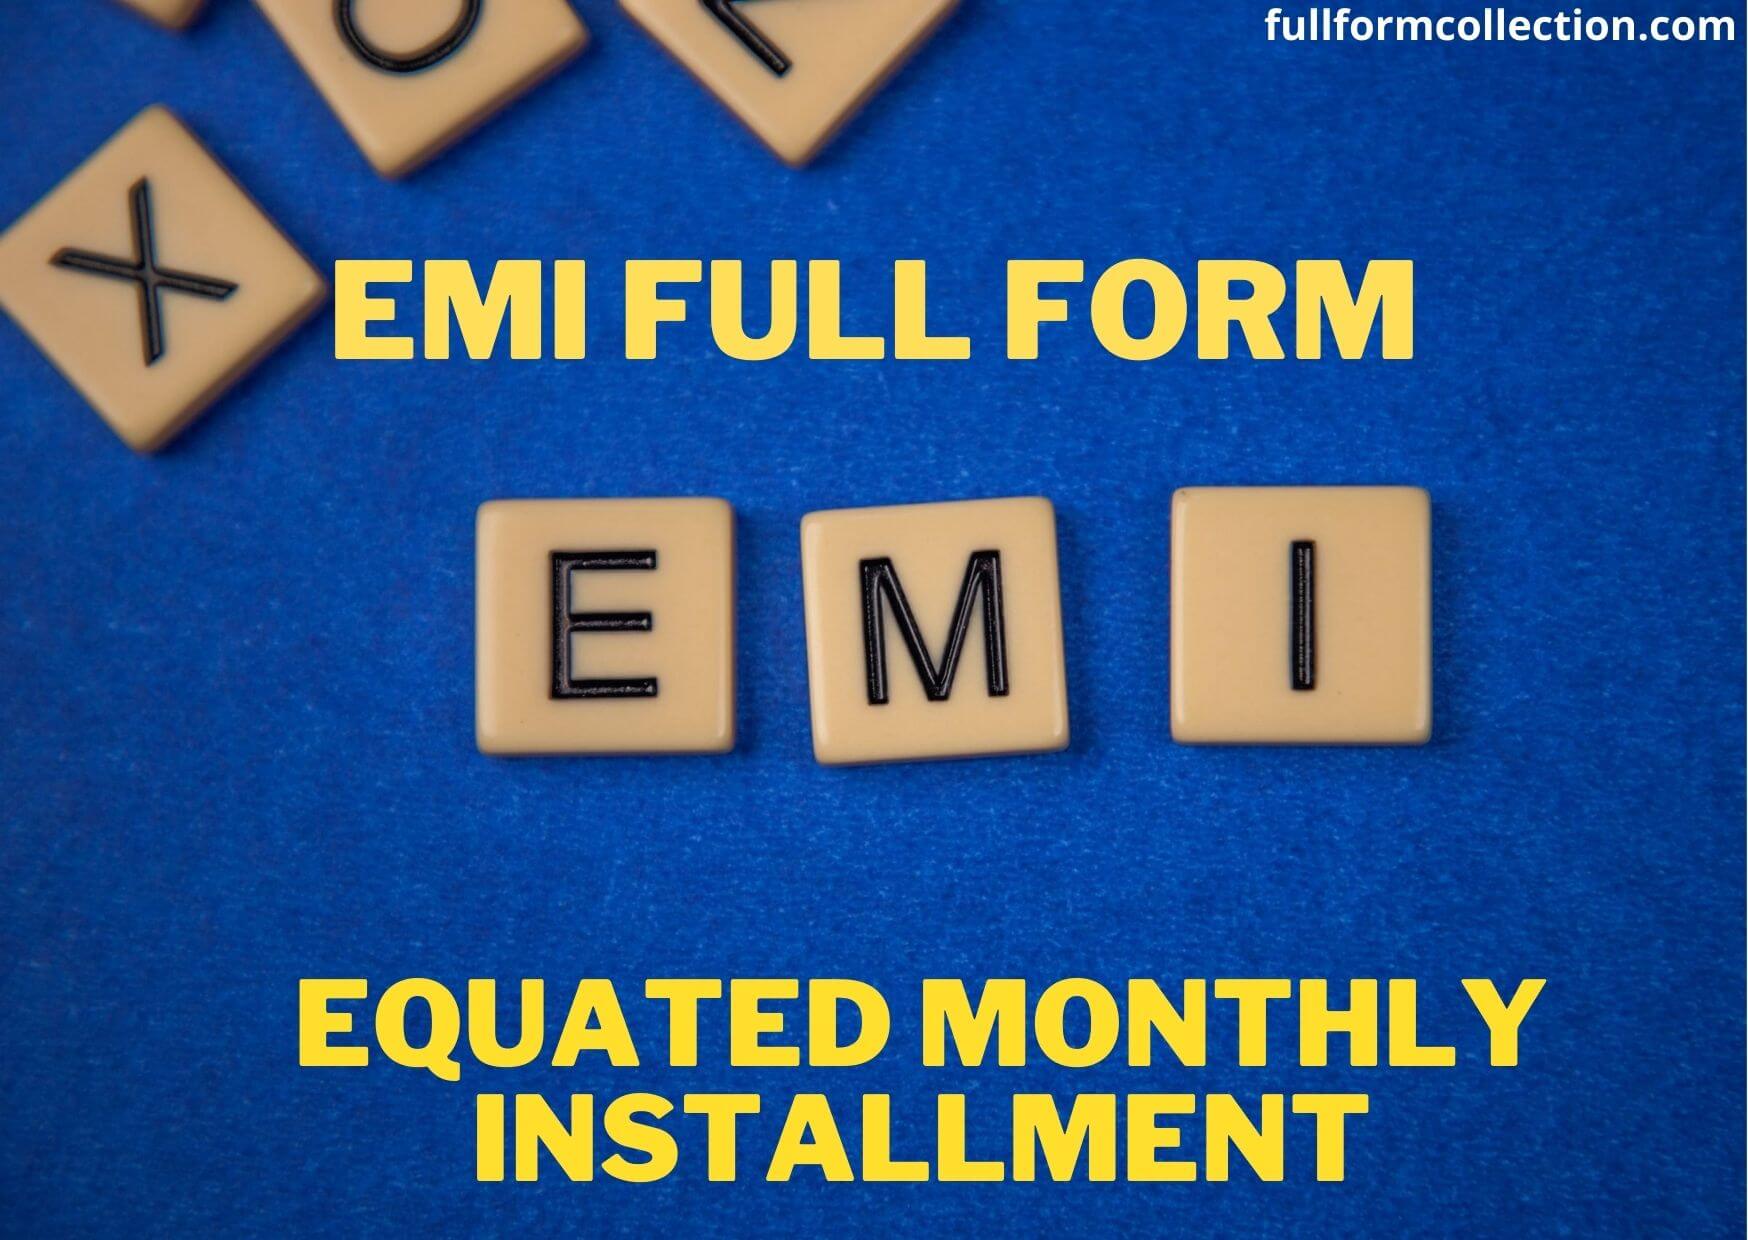 EMI Full Form